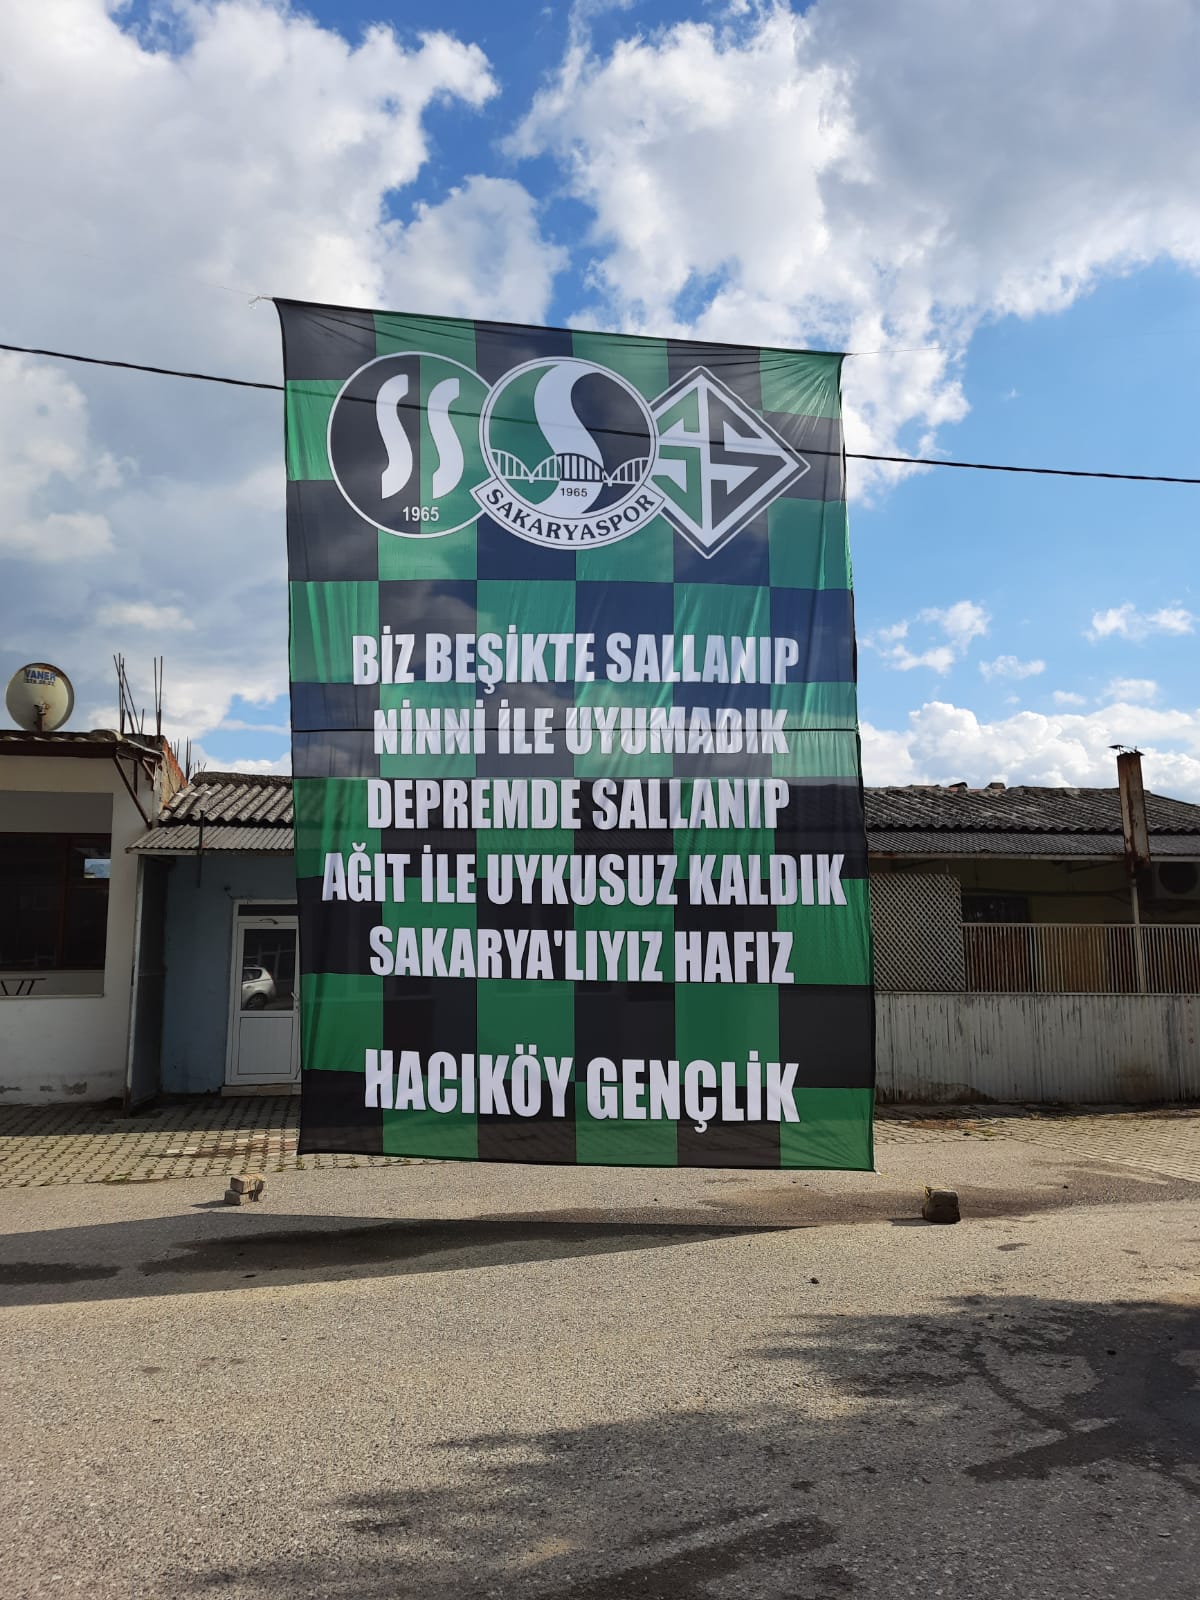 Hacıköy Gençlikten Sakaryaspor’a destek